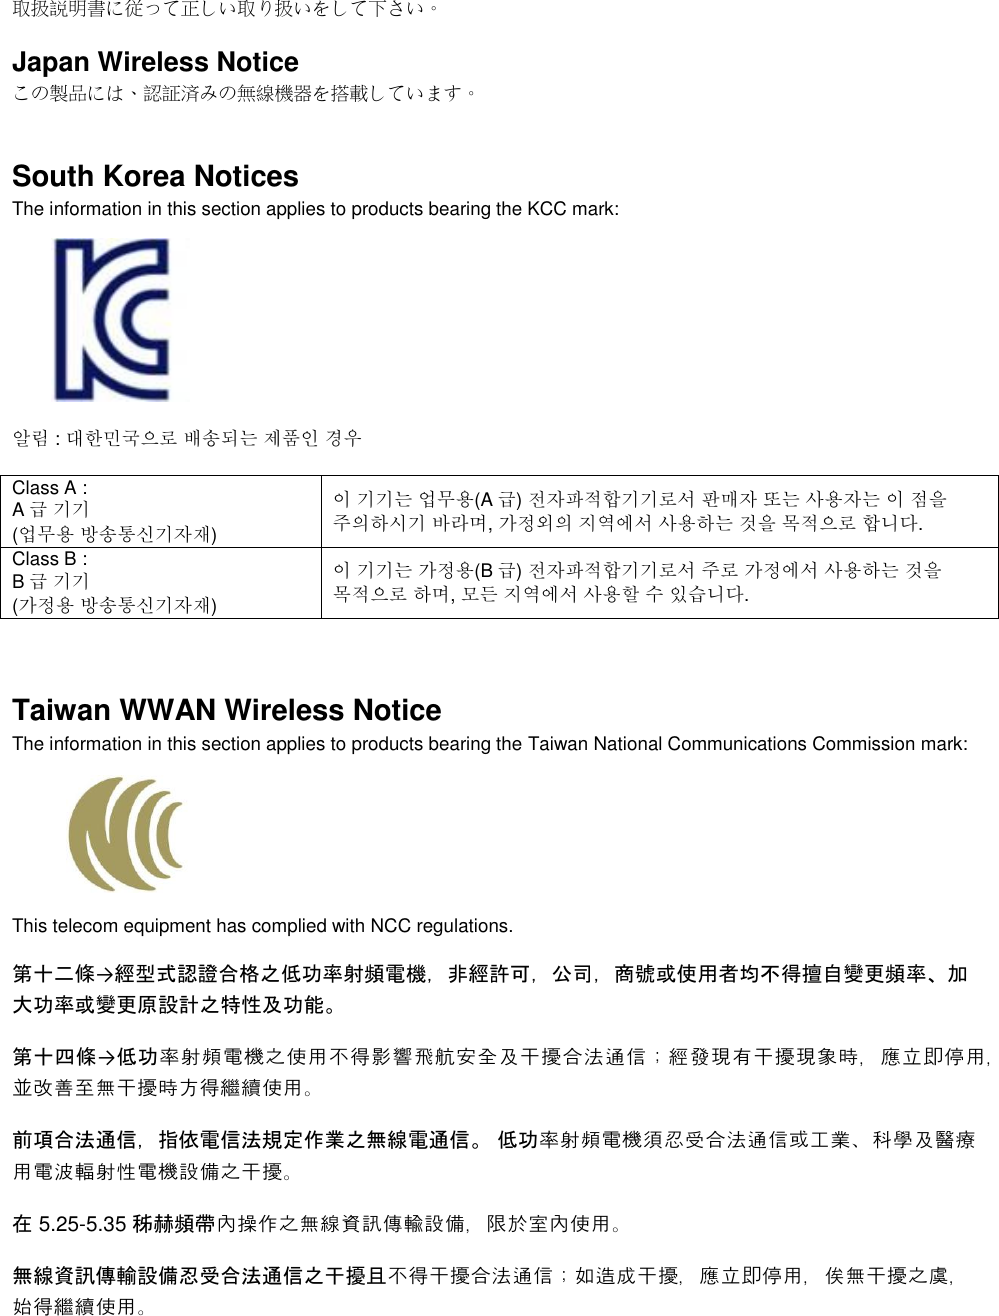  取扱説明書に従って正しい取り扱いをして下さい。 Japan Wireless Notice この製品には、認証済みの無線機器を搭載しています。 South Korea Notices  The information in this section applies to products bearing the KCC mark:     알림 : 대한민국으로 배송되는 제품인 경우 Class A :  A급 기기 (업무용 방송통신기자재) 이 기기는 업무용(A 급) 전자파적합기기로서 판매자 또는 사용자는 이 점을 주의하시기 바라며, 가정외의 지역에서 사용하는 것을 목적으로 합니다. Class B :  B급 기기 (가정용 방송통신기자재) 이 기기는 가정용(B 급) 전자파적합기기로서 주로 가정에서 사용하는 것을 목적으로 하며, 모든 지역에서 사용할 수 있습니다.  Taiwan WWAN Wireless Notice  The information in this section applies to products bearing the Taiwan National Communications Commission mark:    This telecom equipment has complied with NCC regulations.  第十二條→經型式認證合格之低功率射頻電機，非經許可，公司，商號或使用者均不得擅自變更頻率、加大功率或變更原設計之特性及功能。 第十四條→低功率射頻電機之使用不得影響飛航安全及干擾合法通信；經發現有干擾現象時，應立即停用，並改善至無干擾時方得繼續使用。 前項合法通信，指依電信法規定作業之無線電通信。 低功率射頻電機須忍受合法通信或工業、科學及醫療用電波輻射性電機設備之干擾。 在 5.25-5.35 秭赫頻帶內操作之無線資訊傳輸設備，限於室內使用。 無線資訊傳輸設備忍受合法通信之干擾且不得干擾合法通信；如造成干擾，應立即停用，俟無干擾之虞，始得繼續使用。 